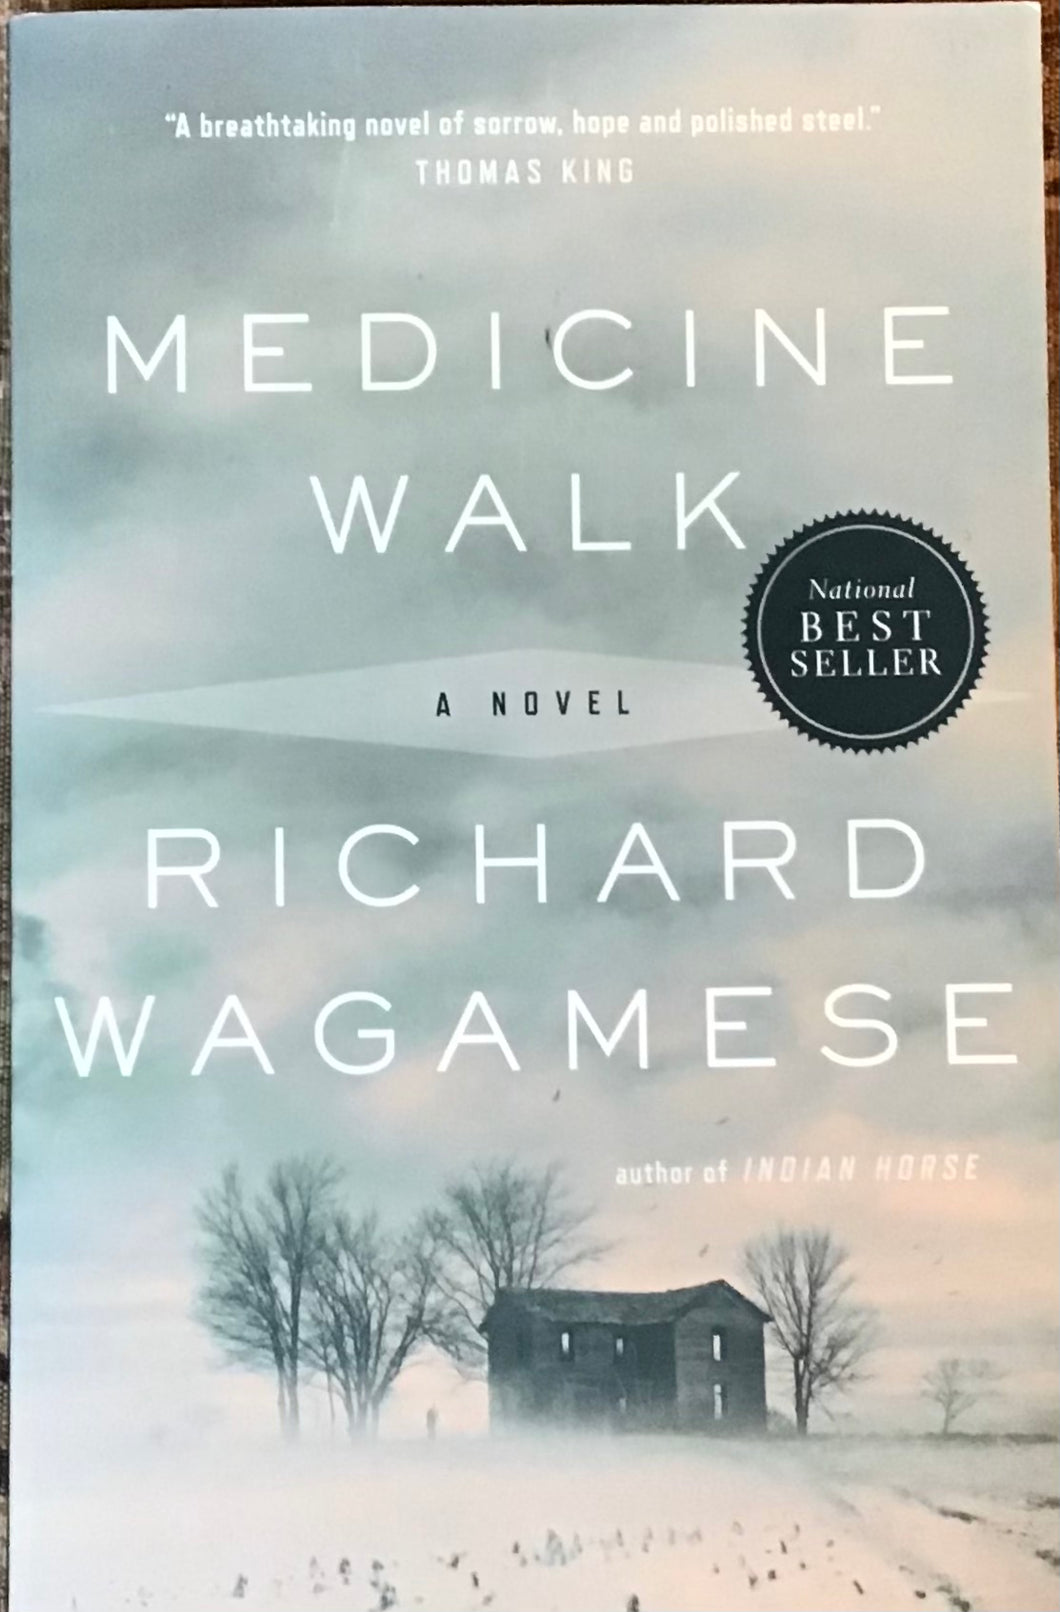 Medicine Walk, Richard Wagamese